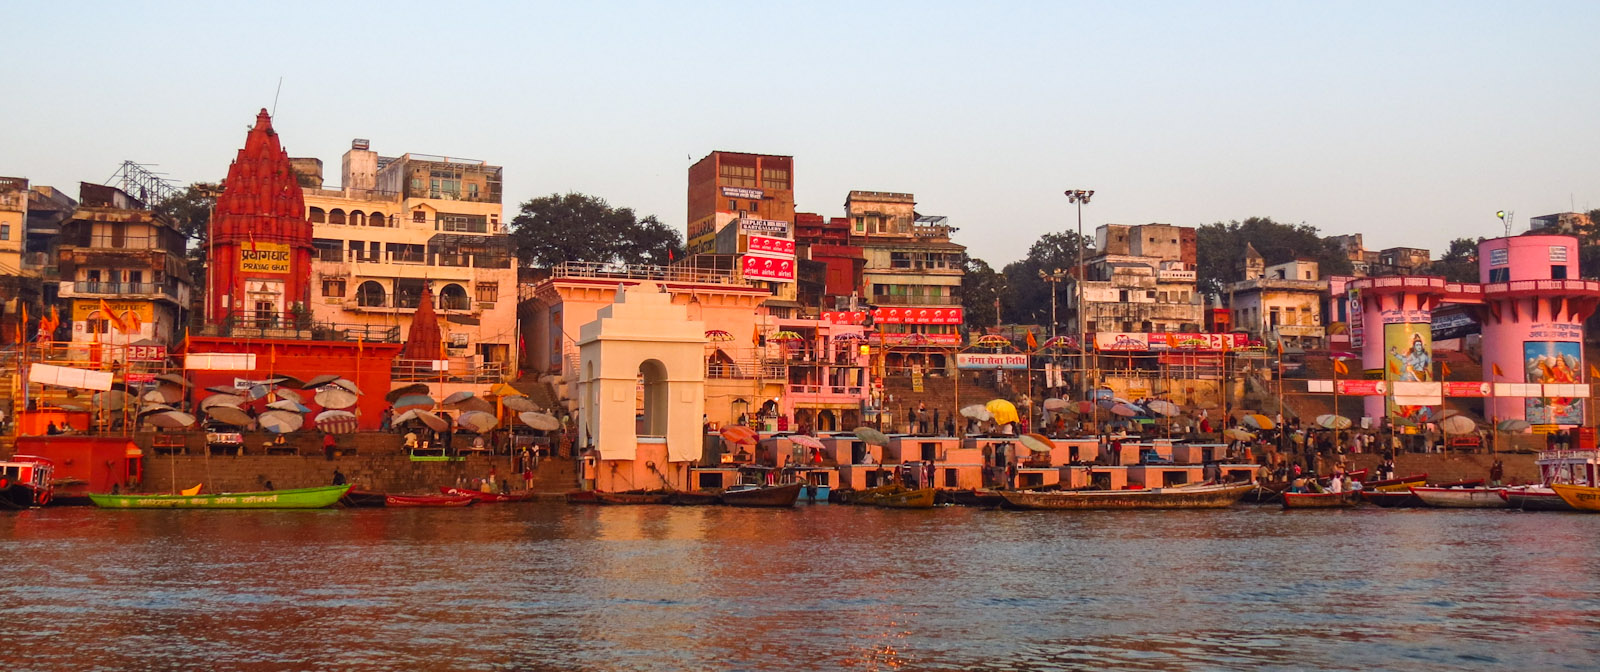 sunrise-at-the-ghats-varanasi